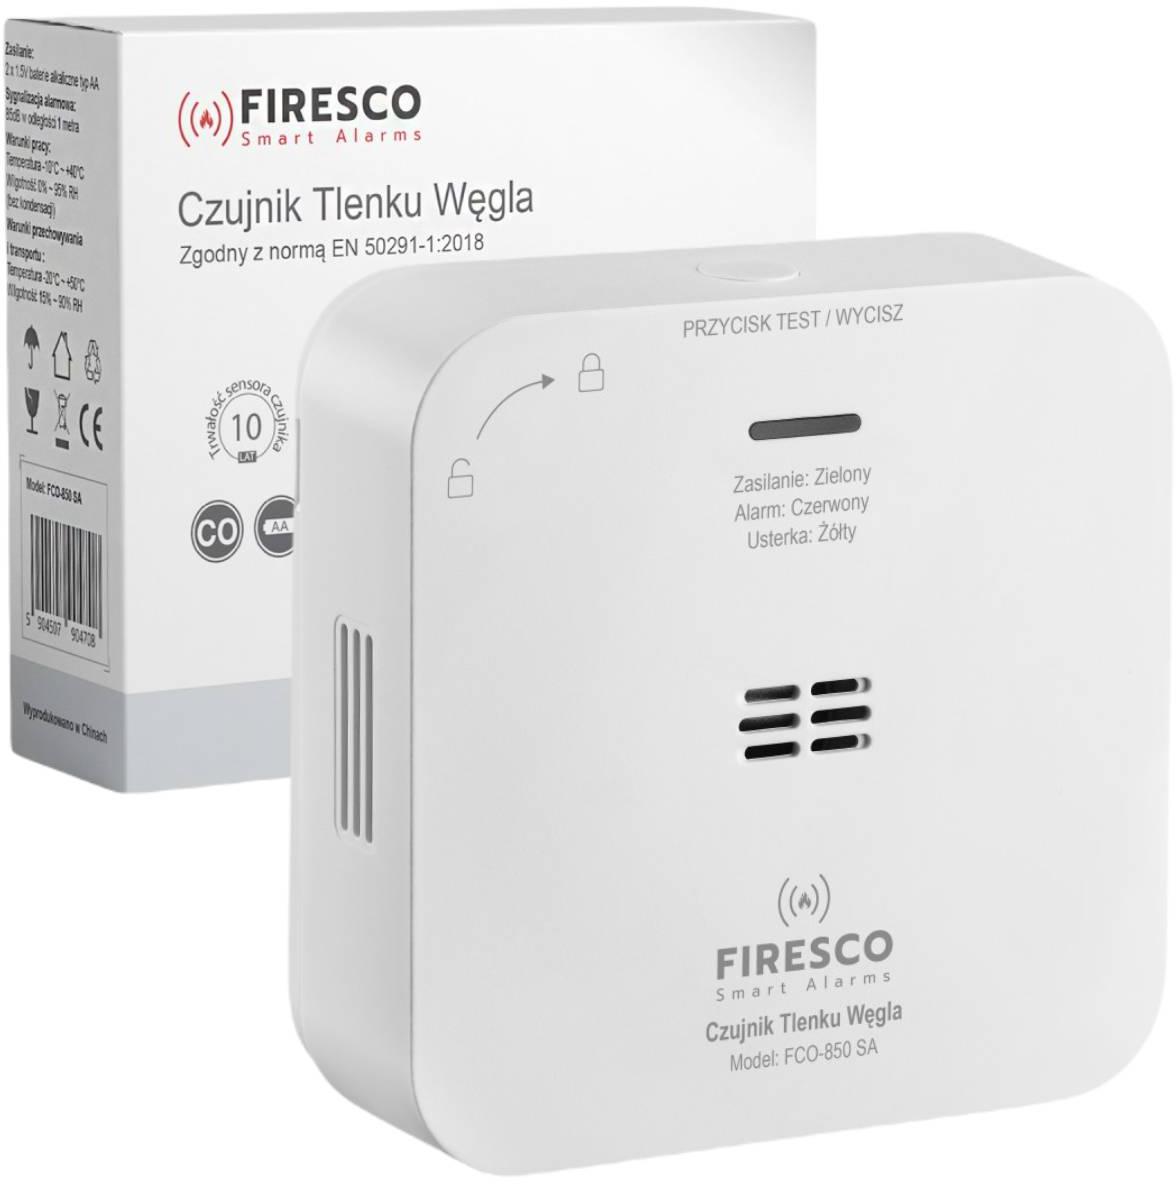 Czujnik czadu z sensorem elektrochemicznym Firesco FCO-850 SA - najważniejsze cechy: